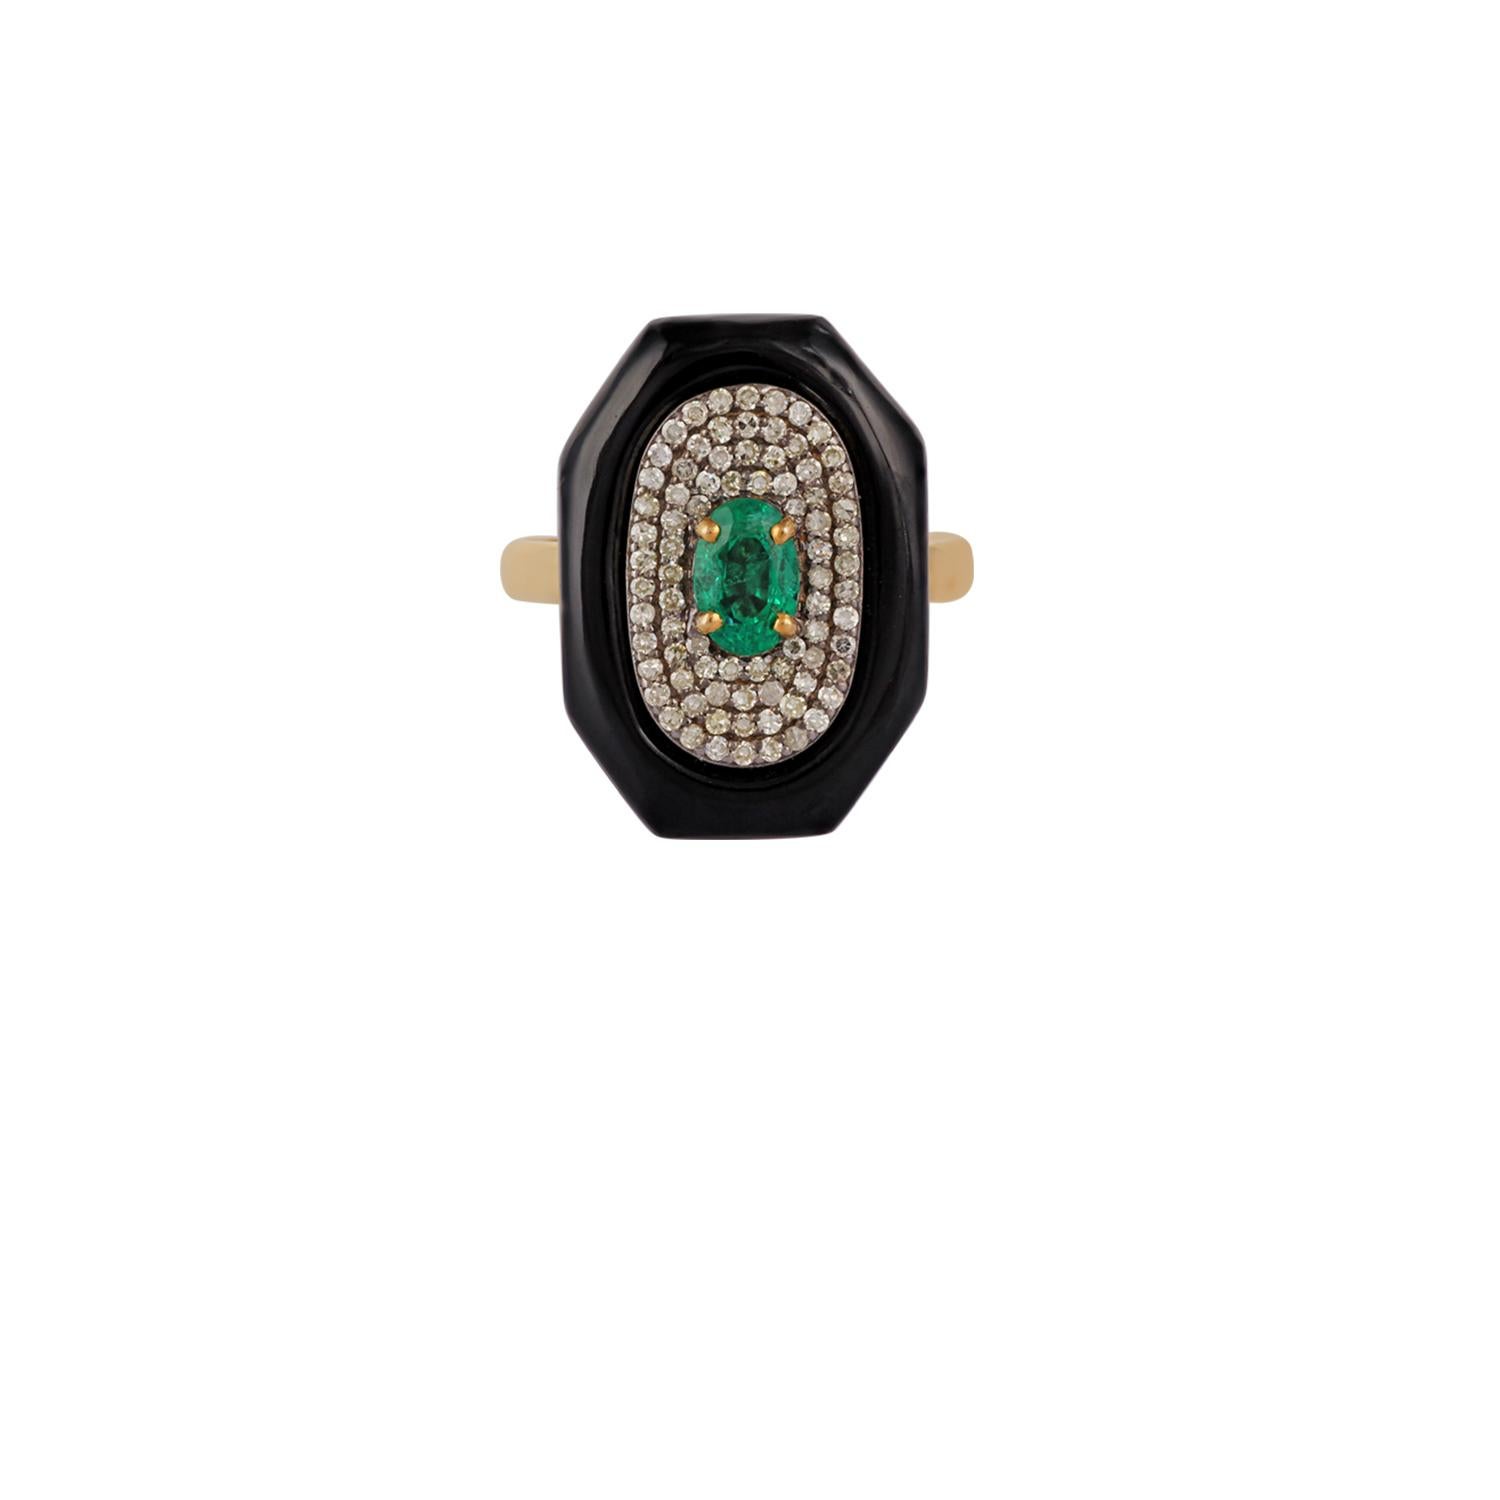 Dies ist eine elegante Smaragd, Schwarz & Diamant-Ring in 18k Gold mit 1 Stück Oval Cut besetzt  geformter sambischer Smaragd, Gewicht 0,59 Karat, umgeben von schwarzem Onyx, Gewicht 5,97 Karat und runden Diamanten, Gewicht 0,35 Karat, der gesamte